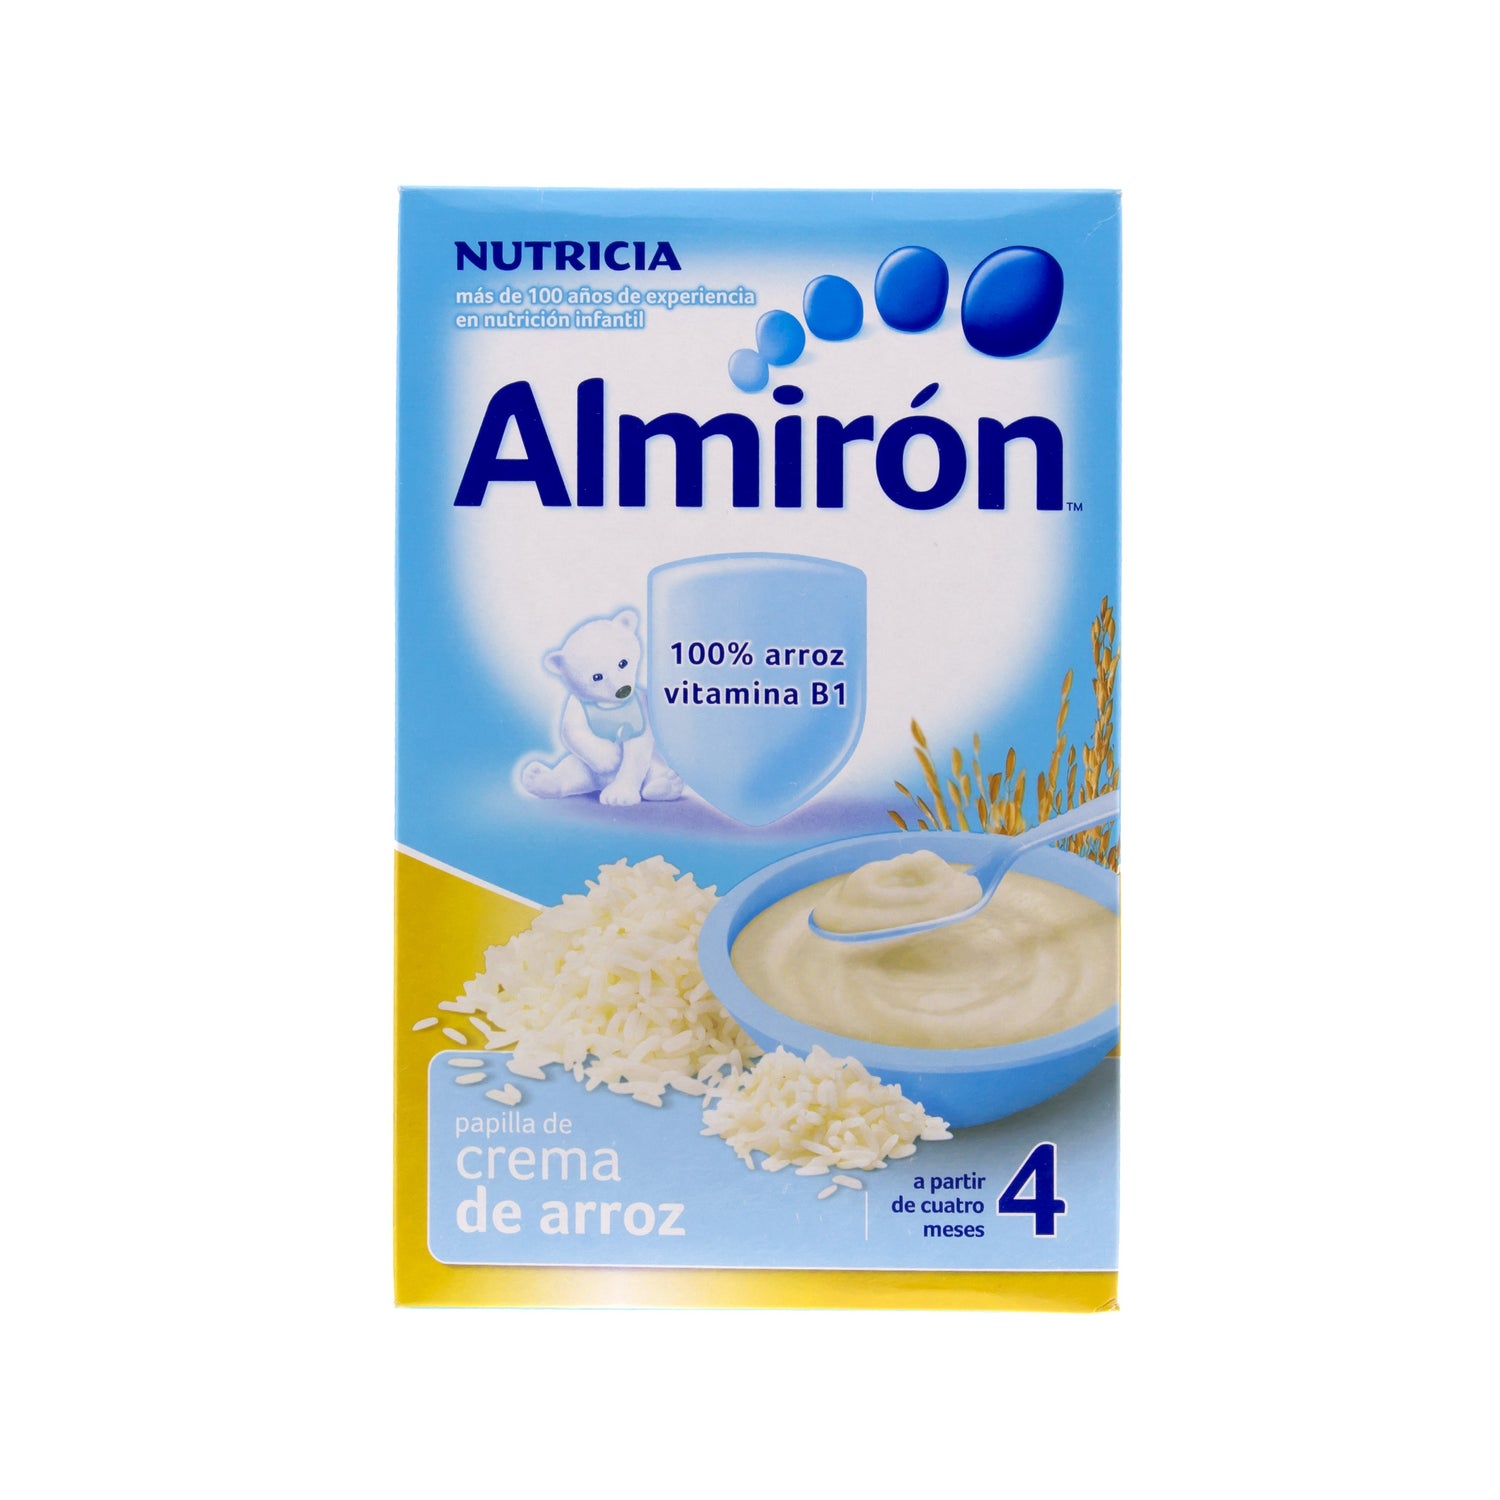 Almirón cereales sin gluten efecto bifidus para bebes a partir del